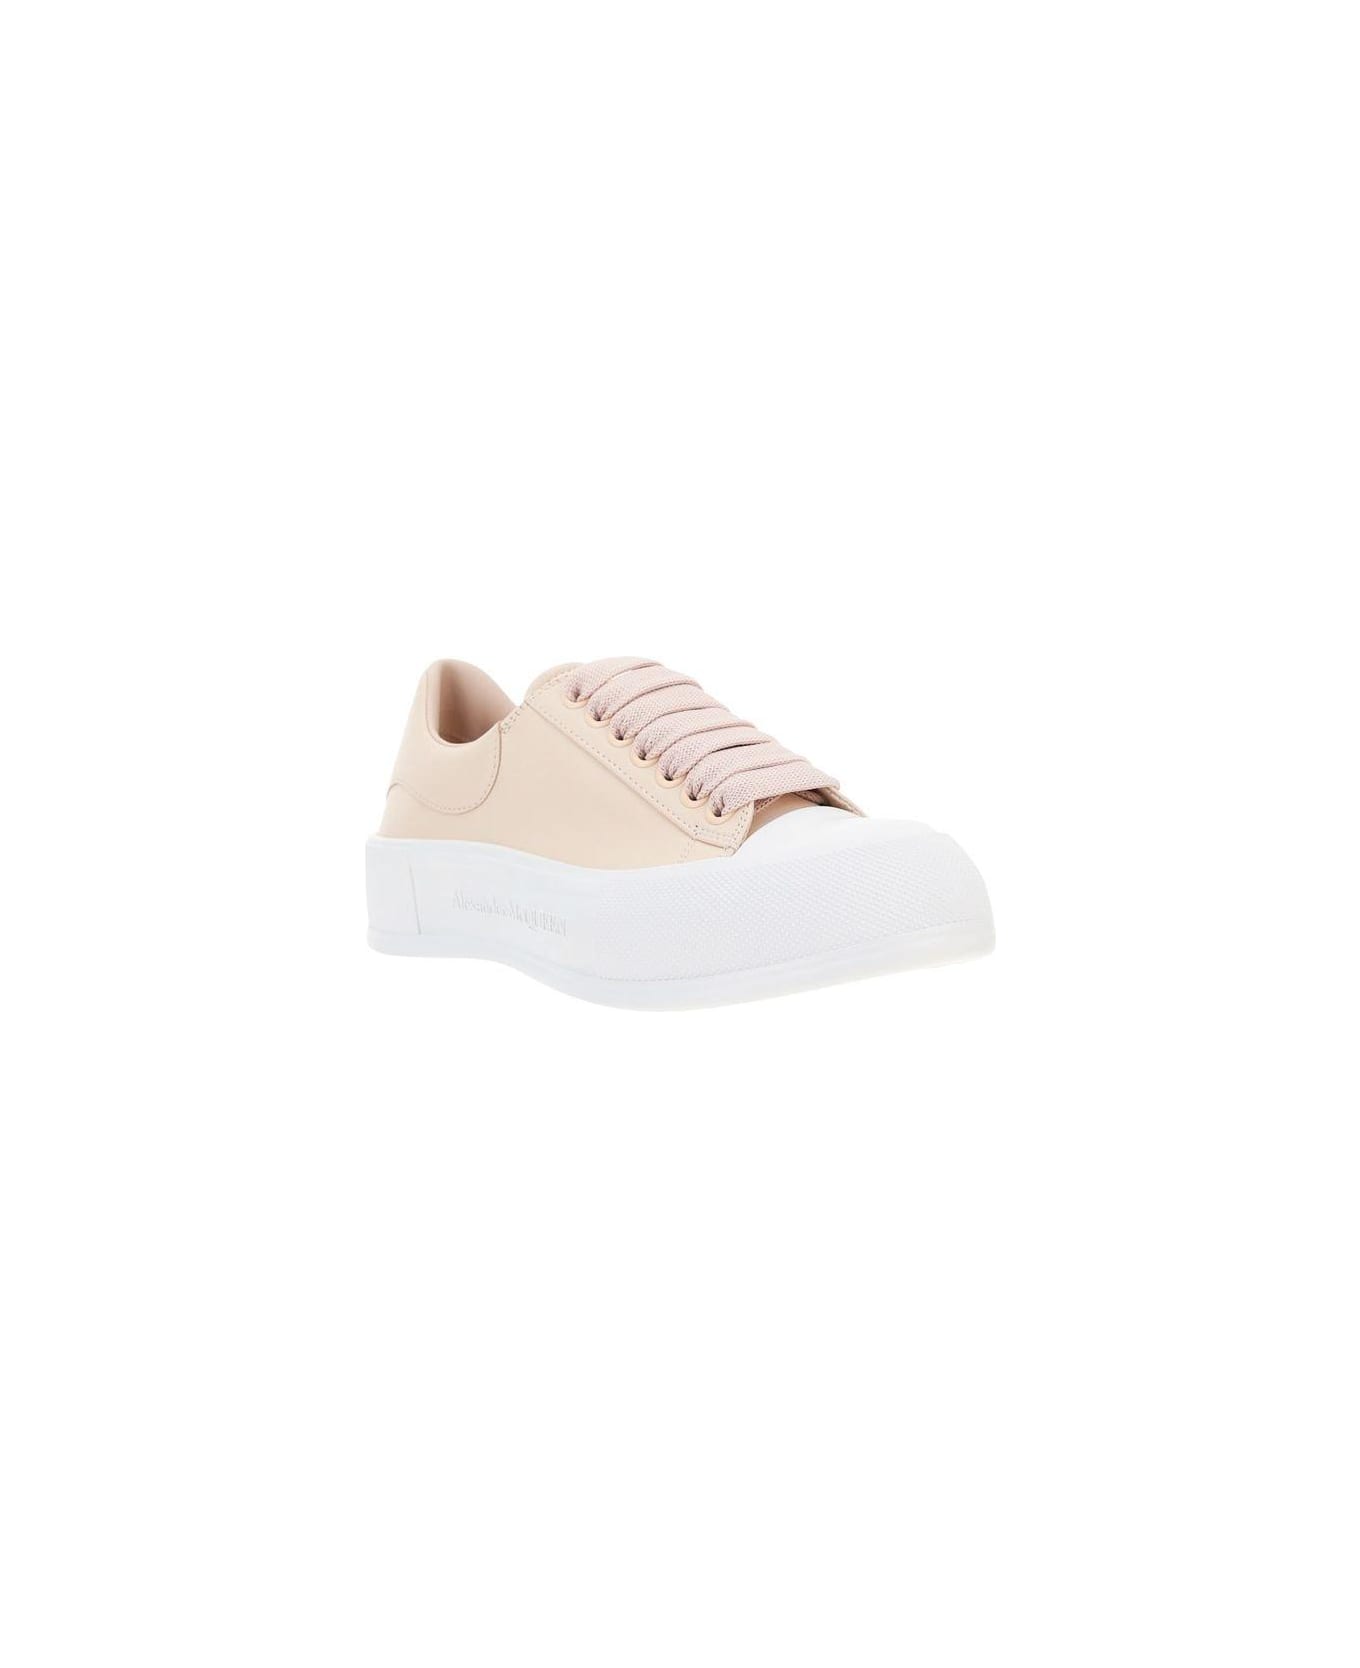 Alexander McQueen Deck Lace-up Sneakers - Pink